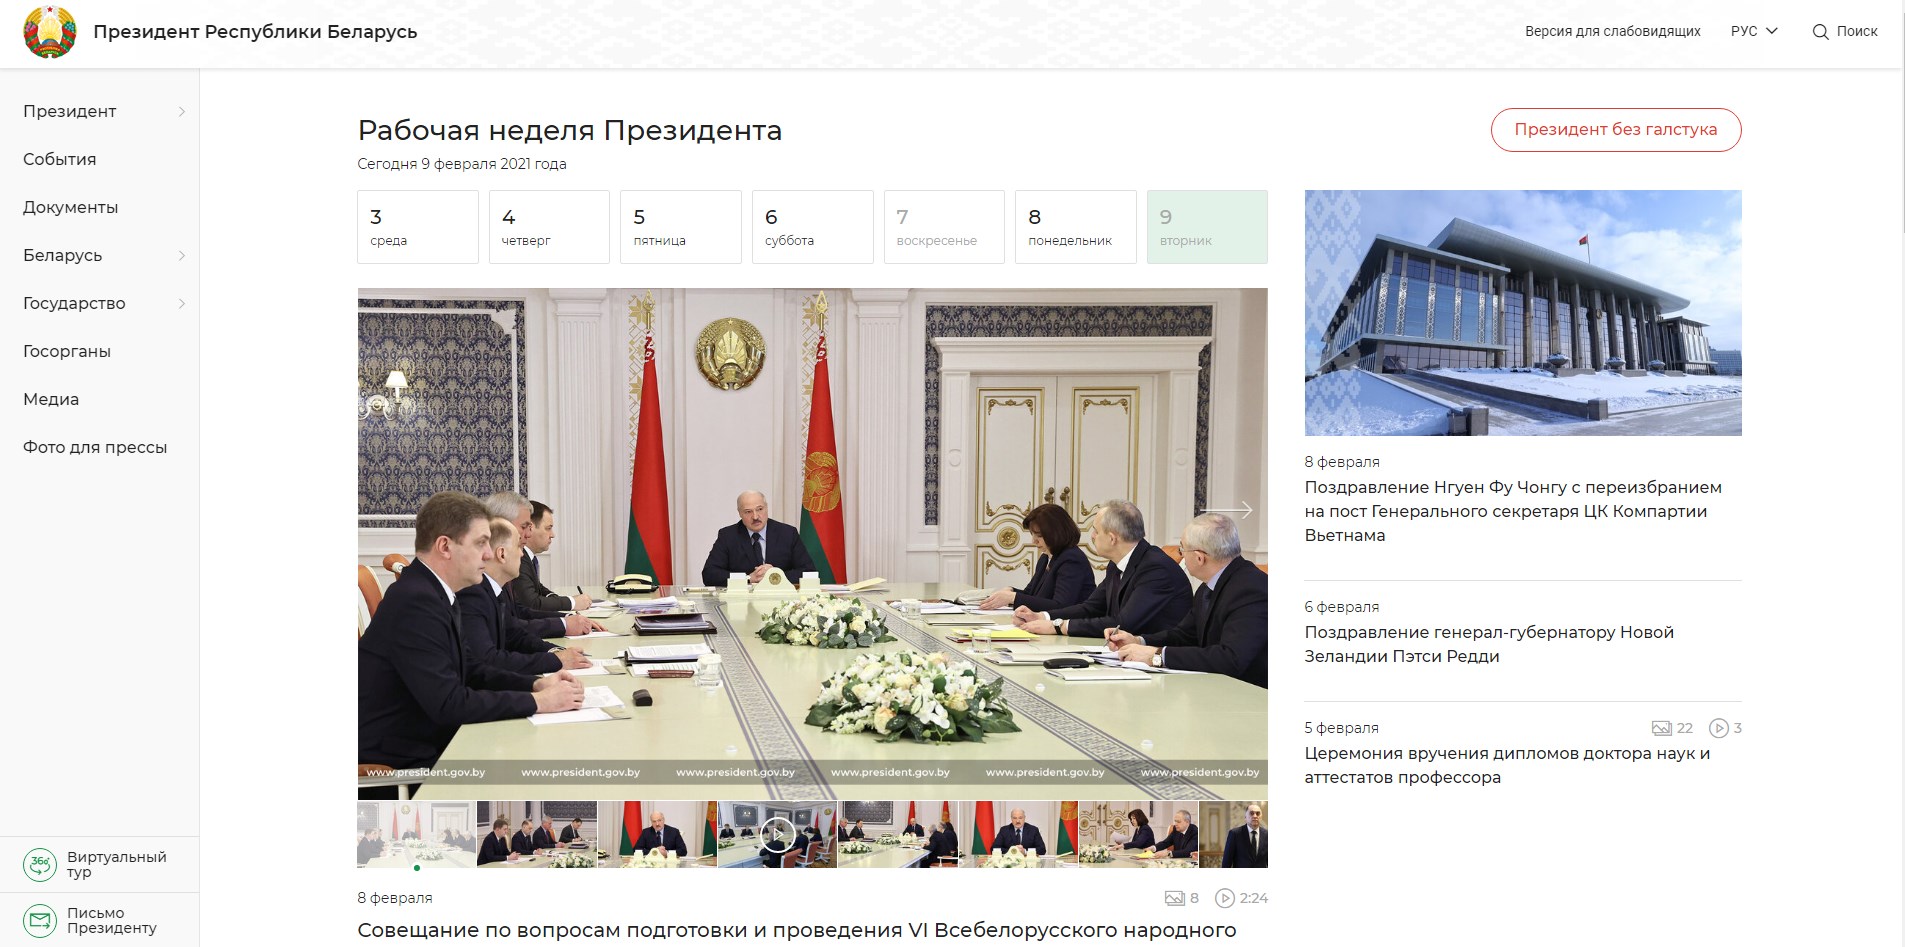 В Интернете появился обновленный сайт белорусского президента